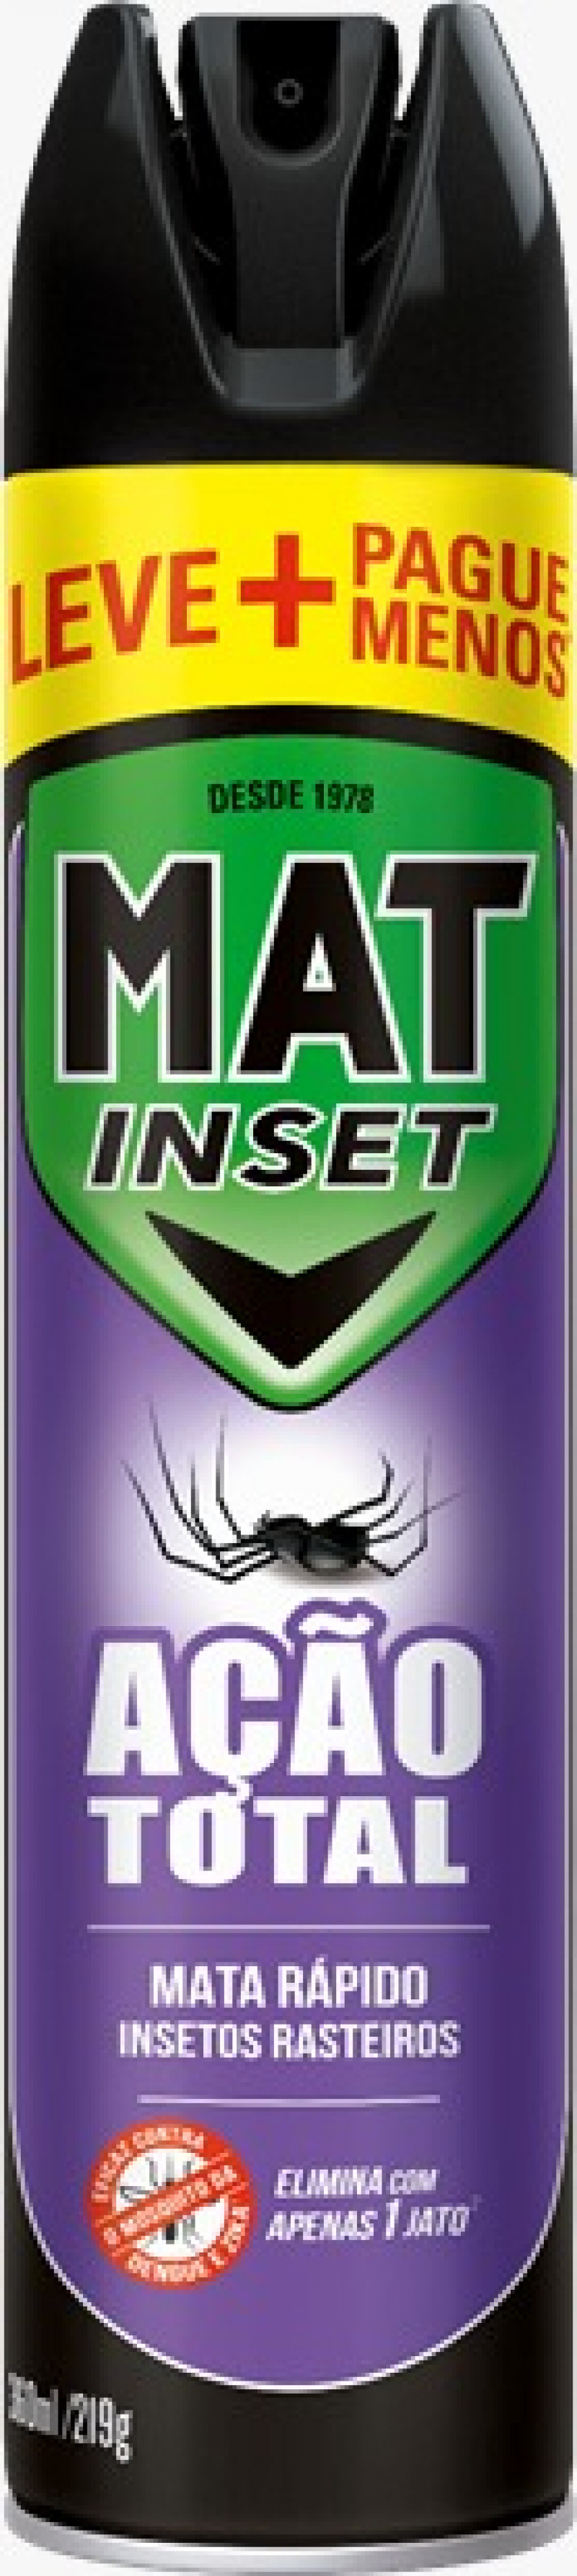 MAT INSET INSETICIDA 360ML PROMO GT33 - ACAO TOTAL CX COM 12 UM